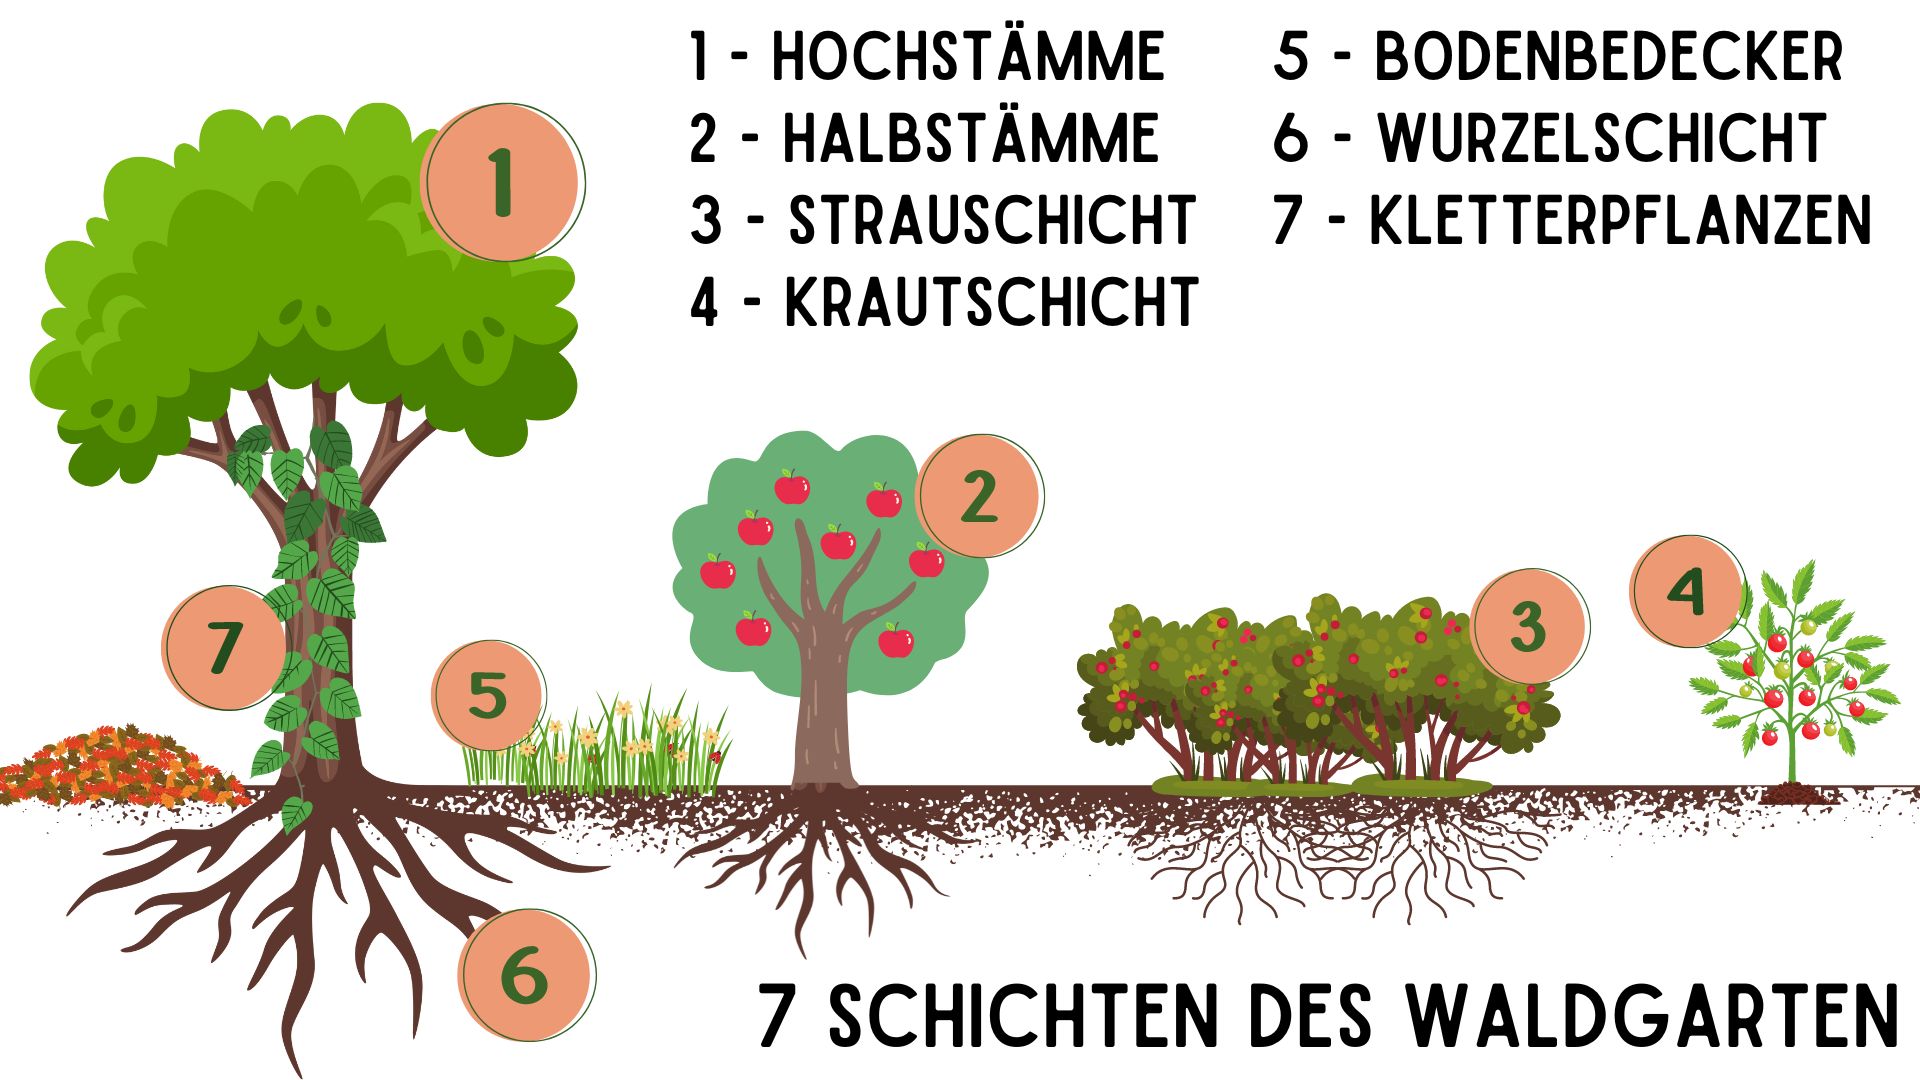 7 Schichten des Waldgarten